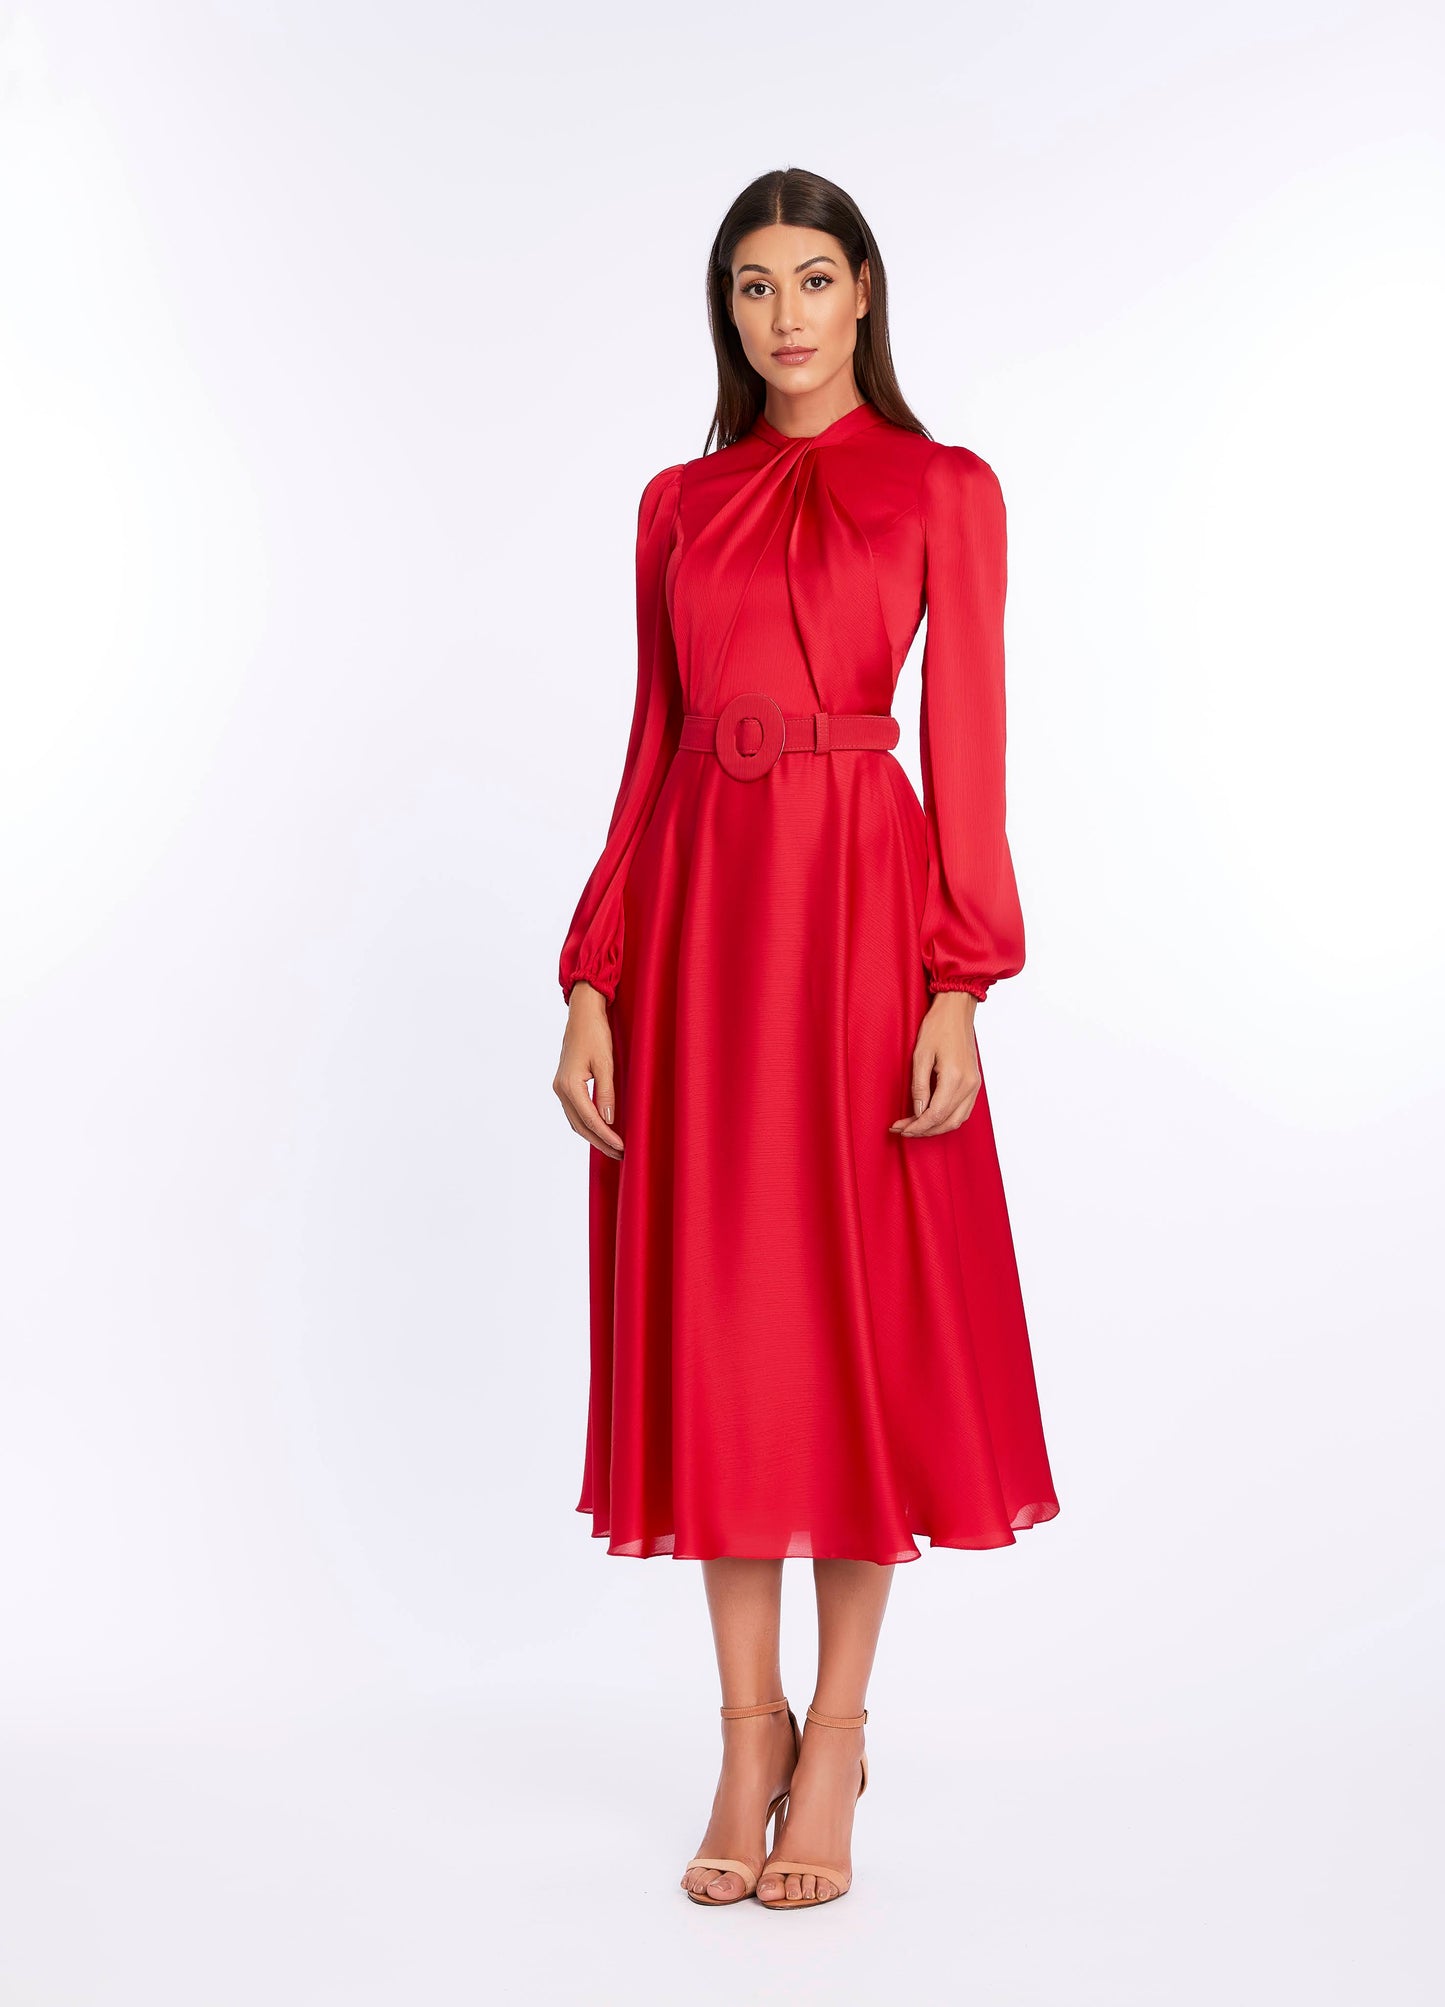 Satin Midi Dress in Red